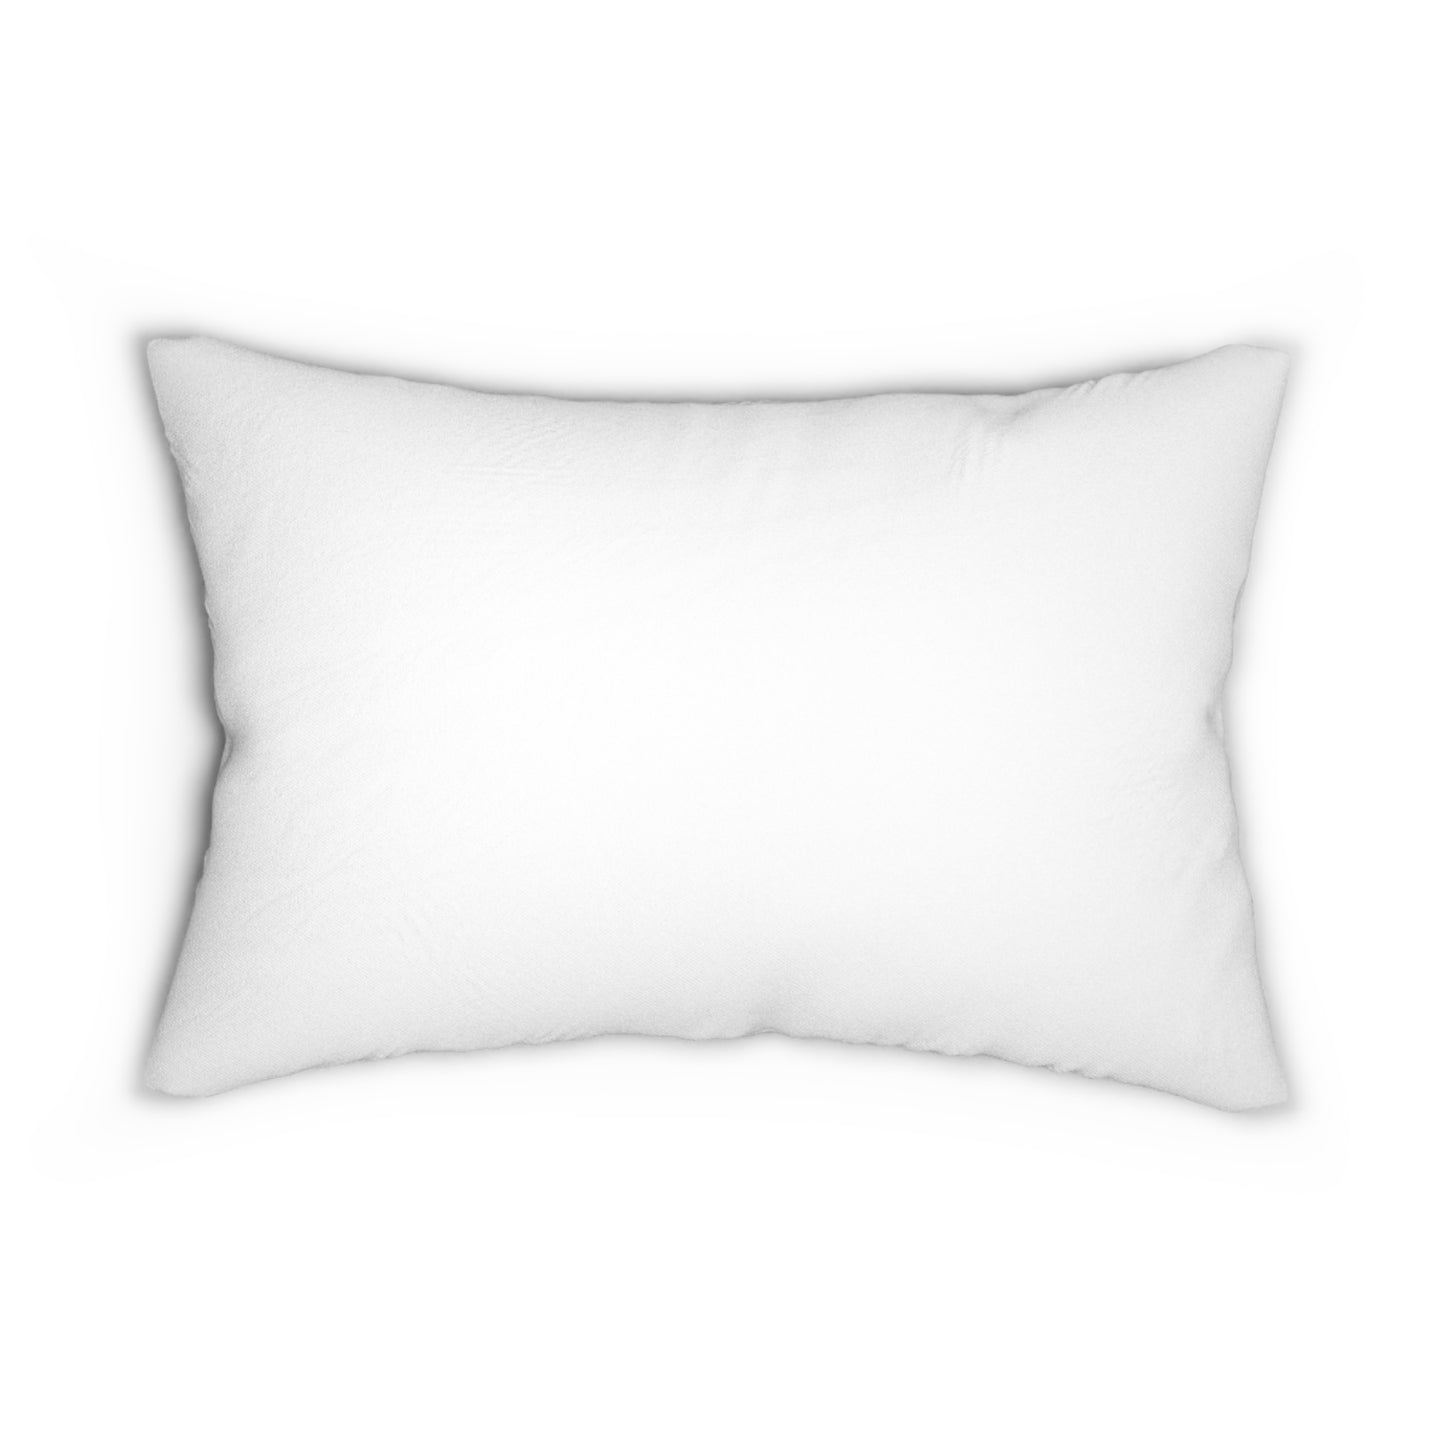 Throw Pillow to Embrace Calmness Enhances Comfort Unique Design Peace of God Throw Pillow Home Decor